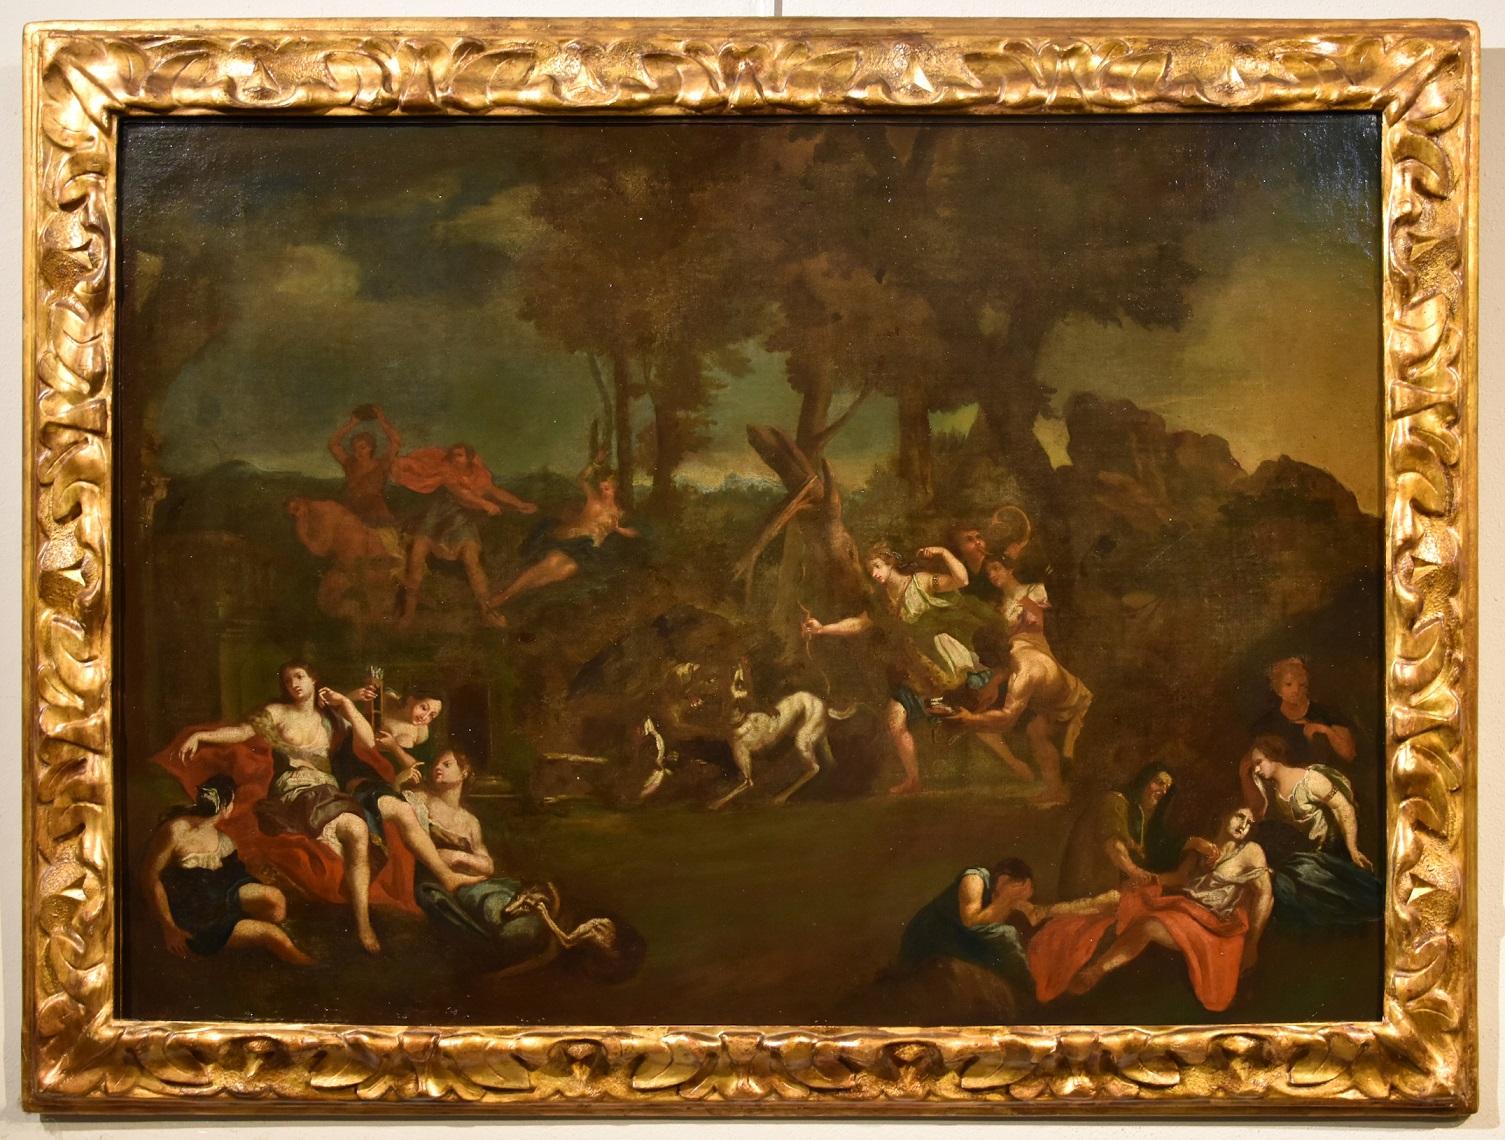 Diana Boullogne Mythologische Gemälde Öl auf Leinwand Alter Meister 17/18. Jahrhundert   – Painting von Unknown